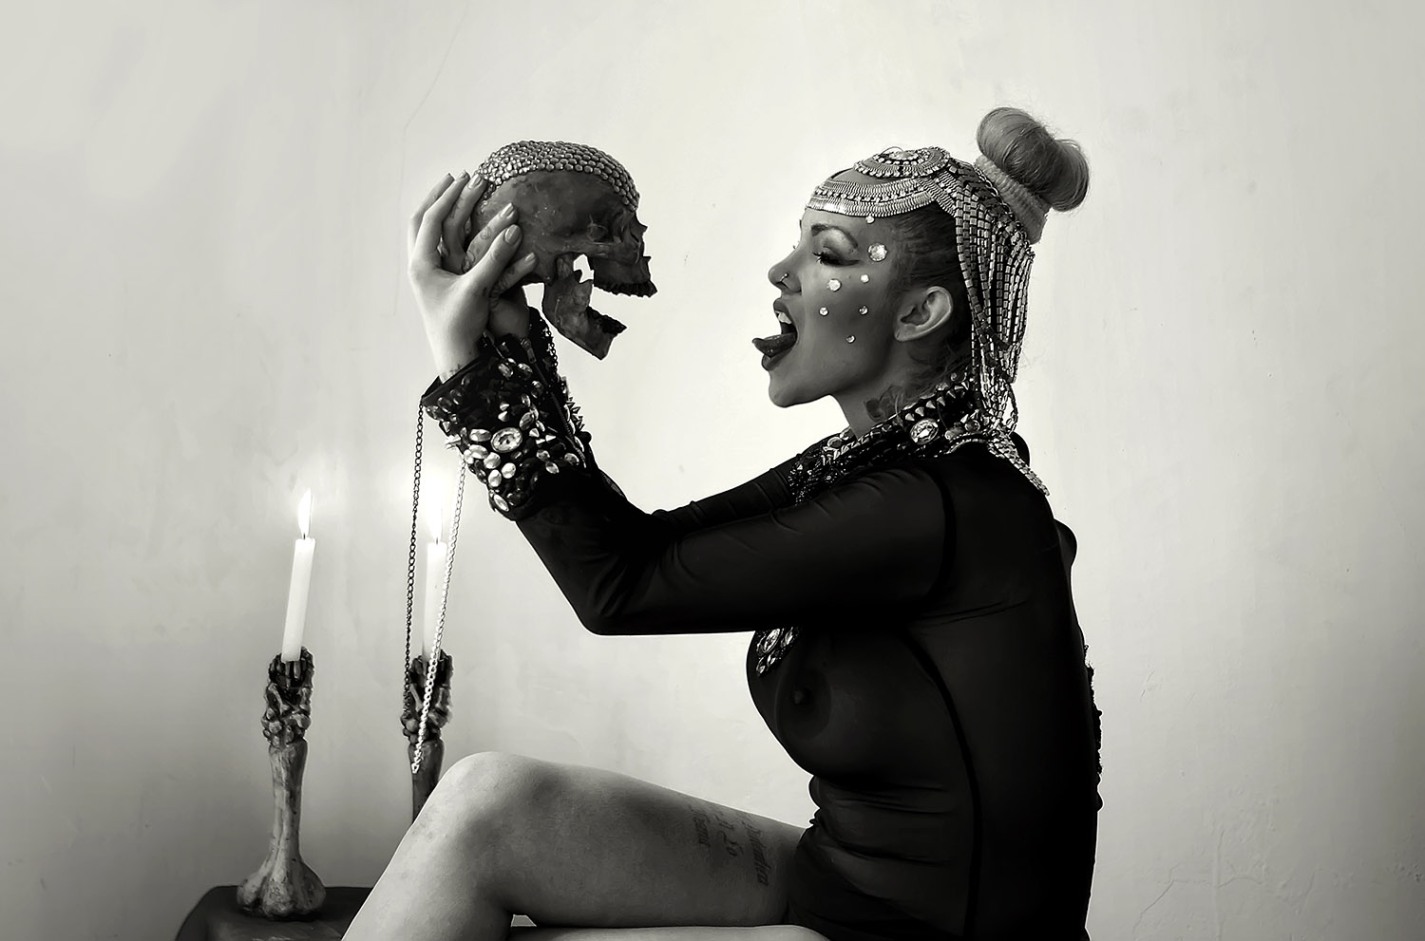 Lynda Moore Amoore-Mario Patino-arte de accion Mexico- genderfuck 2